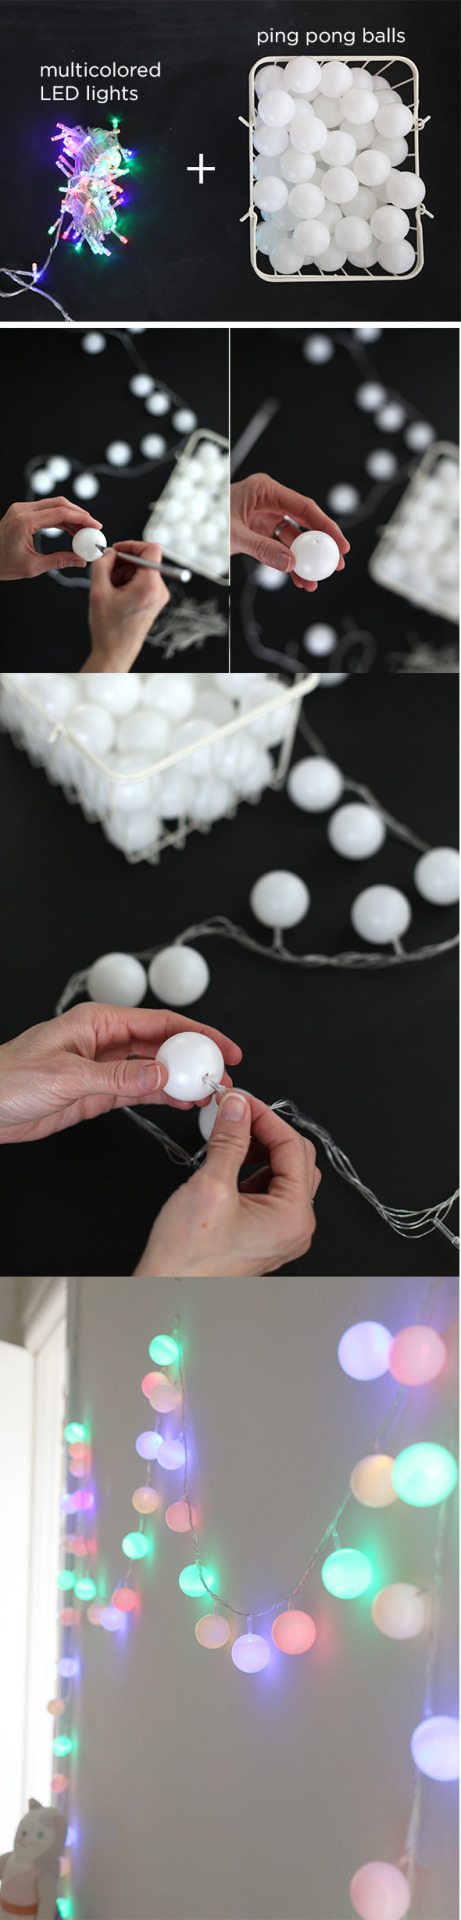 luces para decorar tu habitación - pelotas ping pong